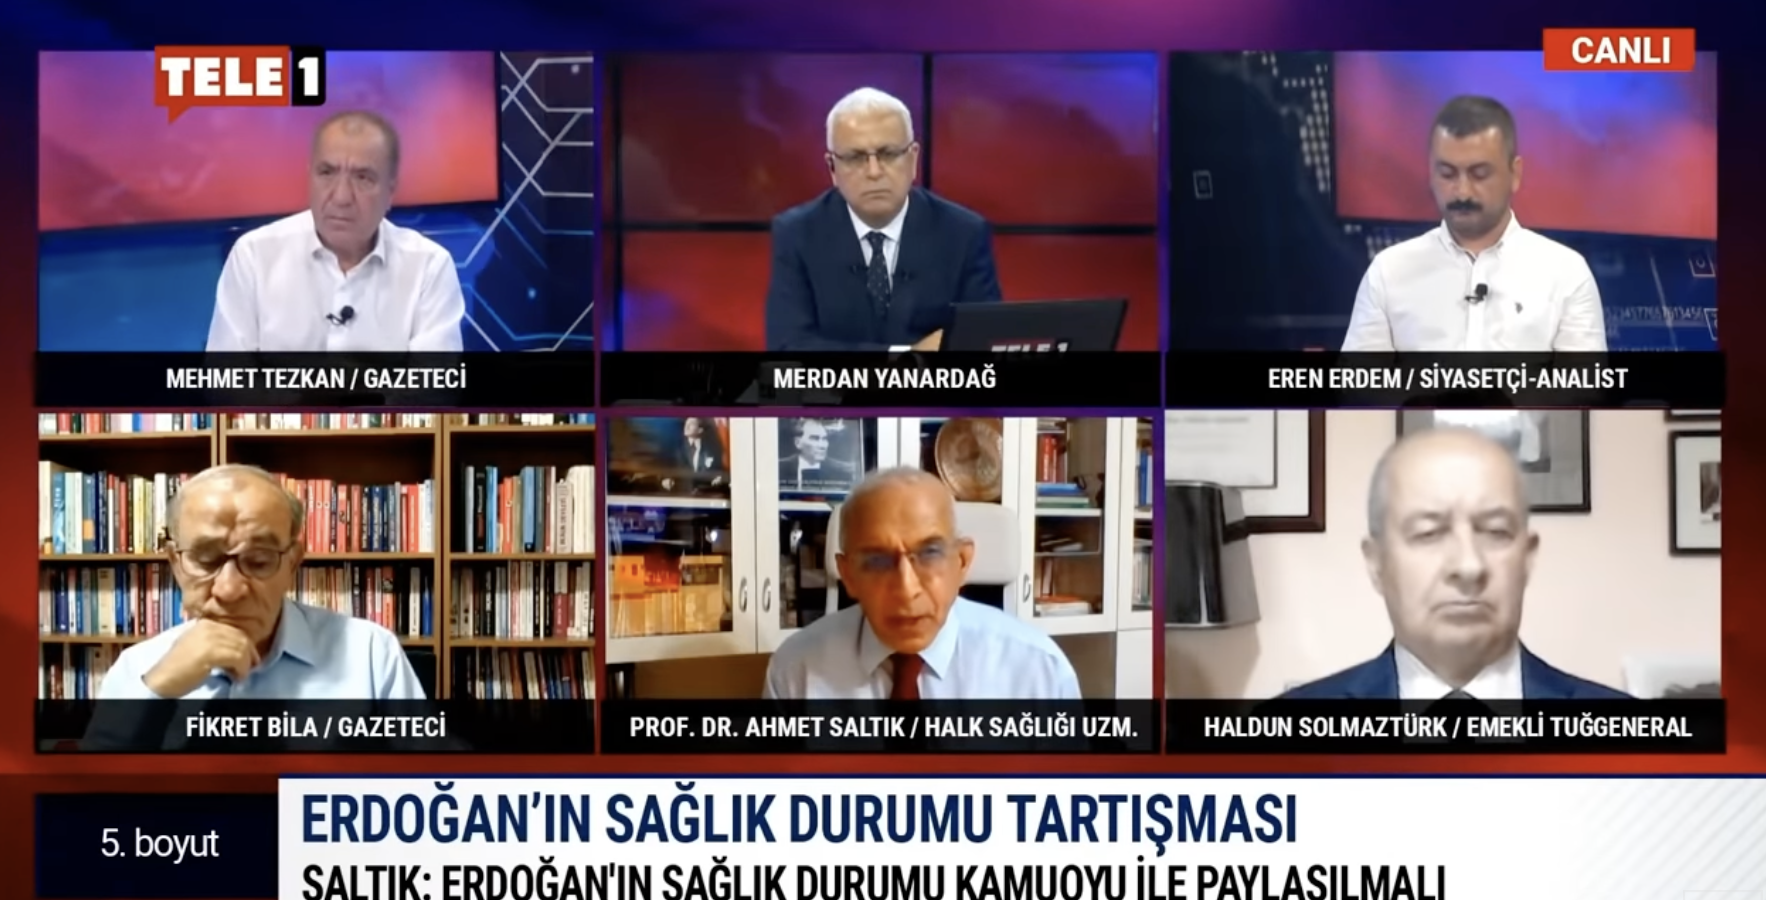 <p>Erdoğan’ın sağlık sorunu olduğu tartışmaları ortaya çıkarken, Tele1’de yayınlanan “5. Boyut” adlı programda Halk Sağlığı Uzmanı Prof. Dr. Ahmet Saltık dikkat çeken açıklamalarda bulundu.</p>